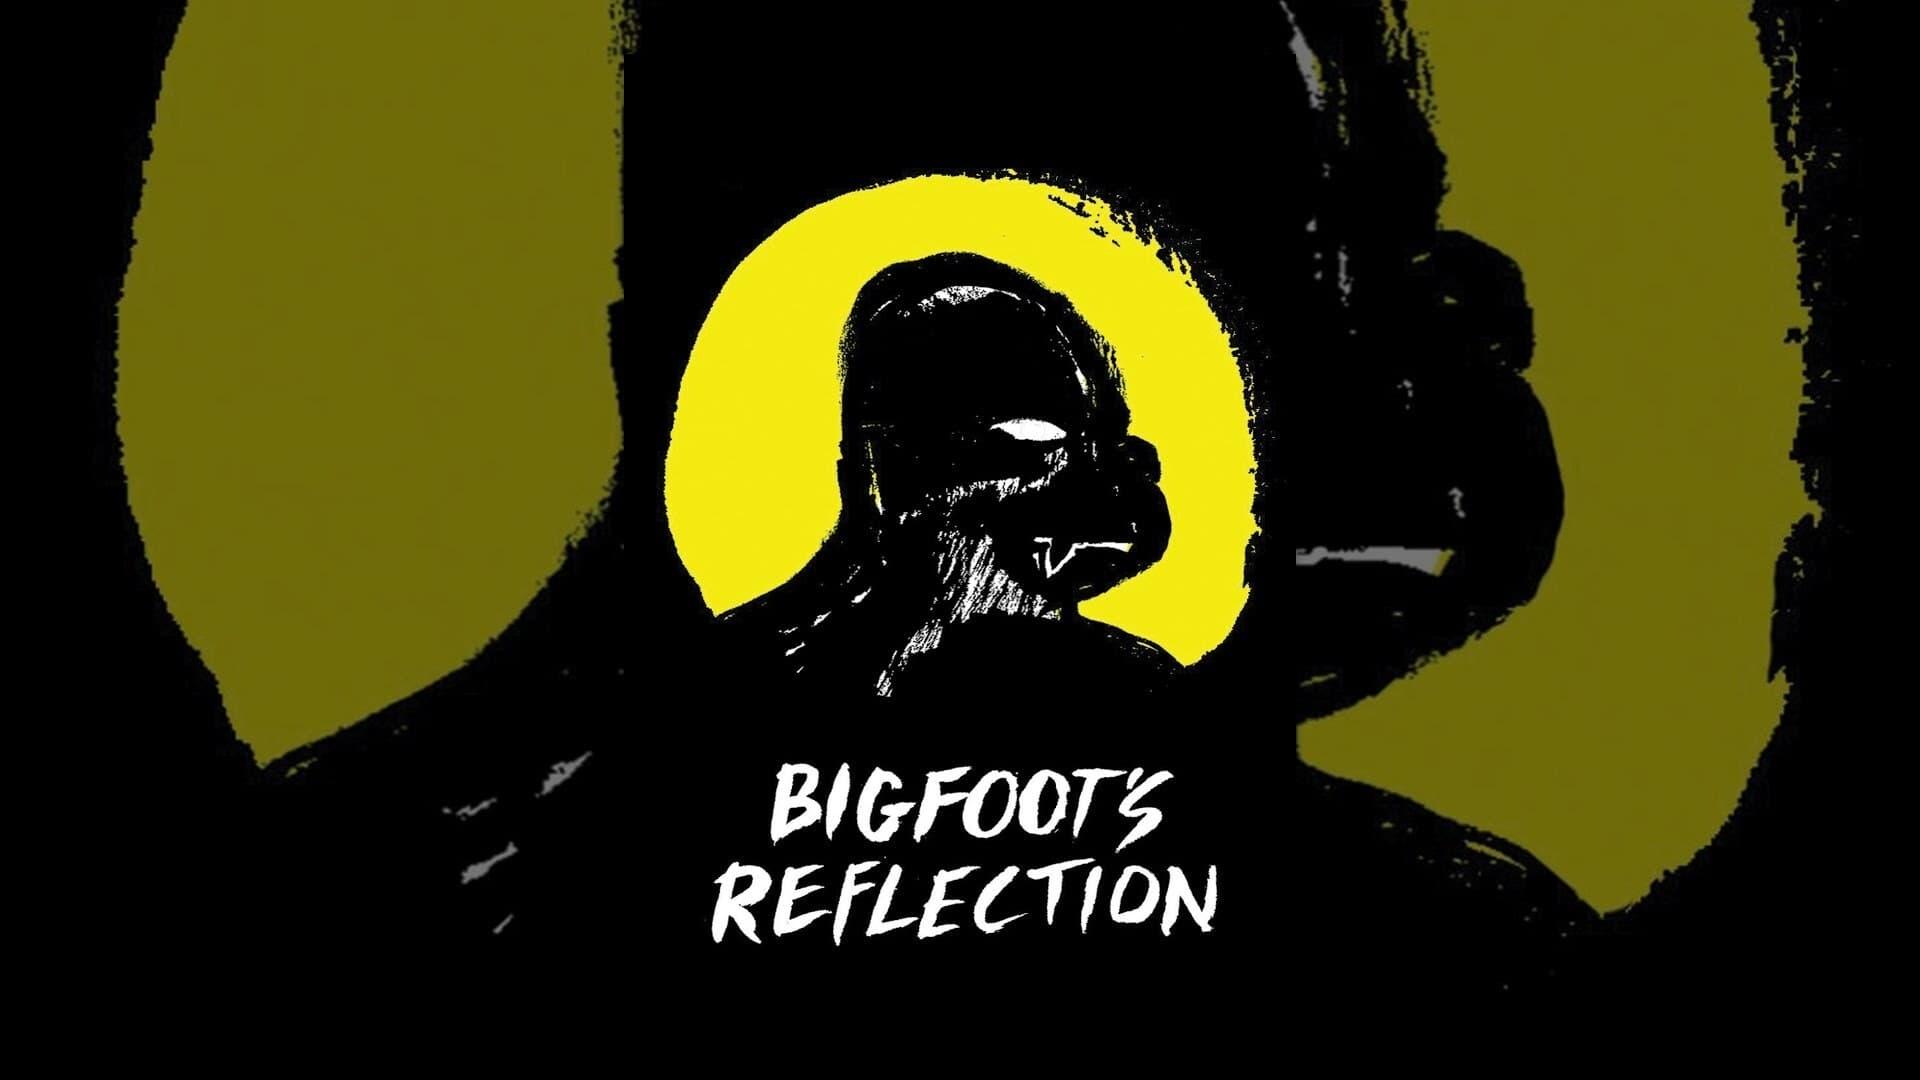 Bigfoot's Reflection backdrop